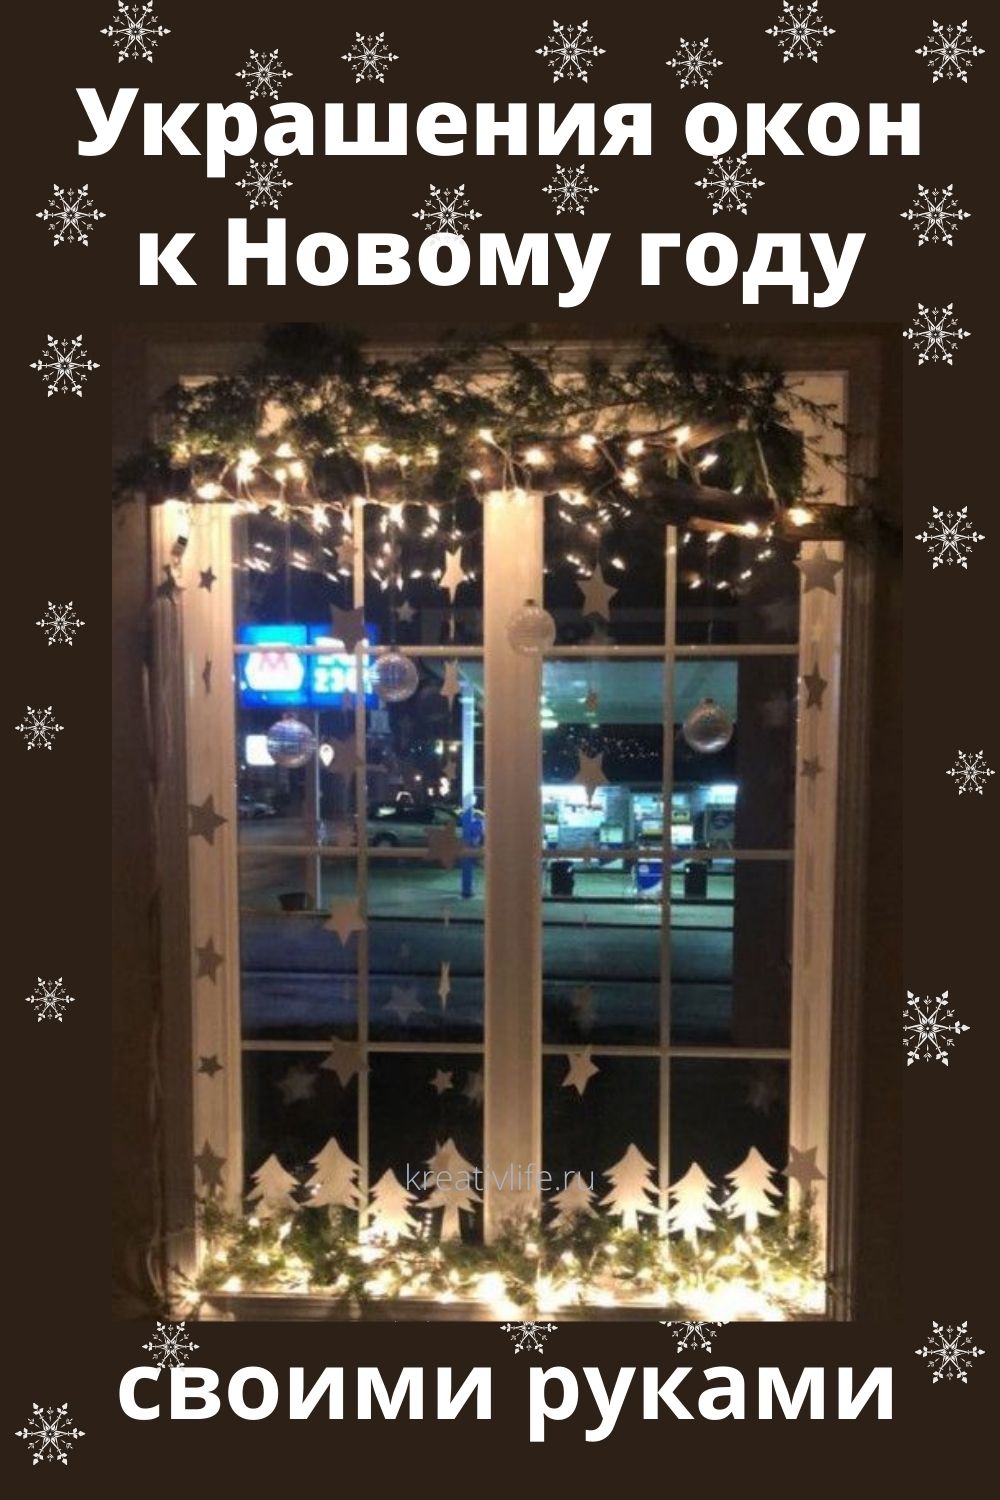 Фото украшений окна в Новому году 